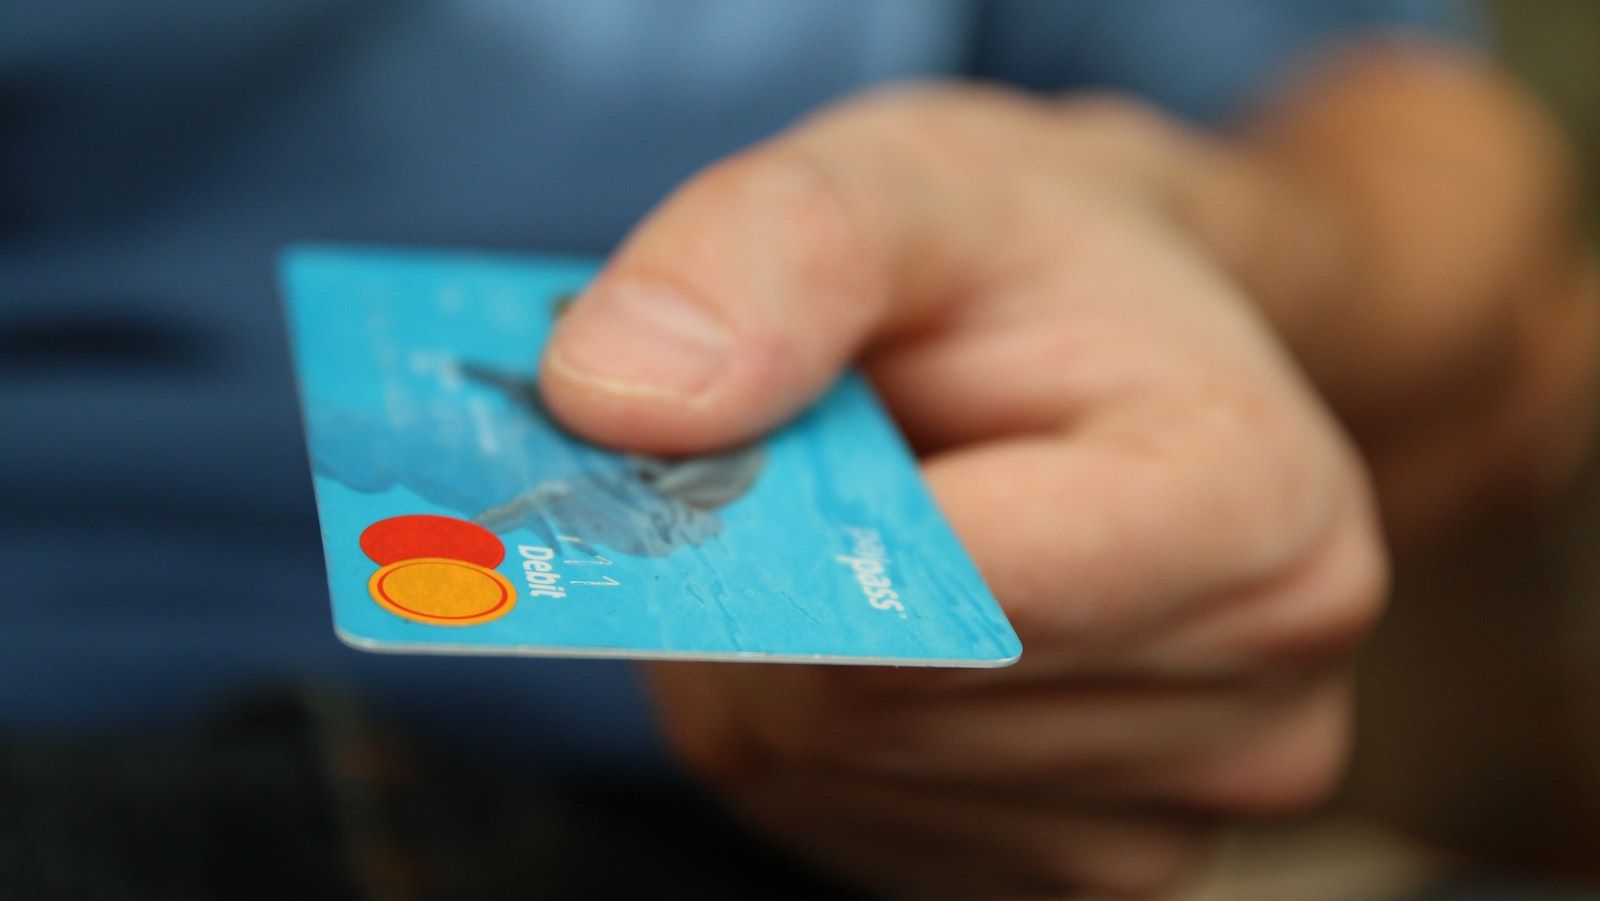 prepaid debit card that allows ach credit